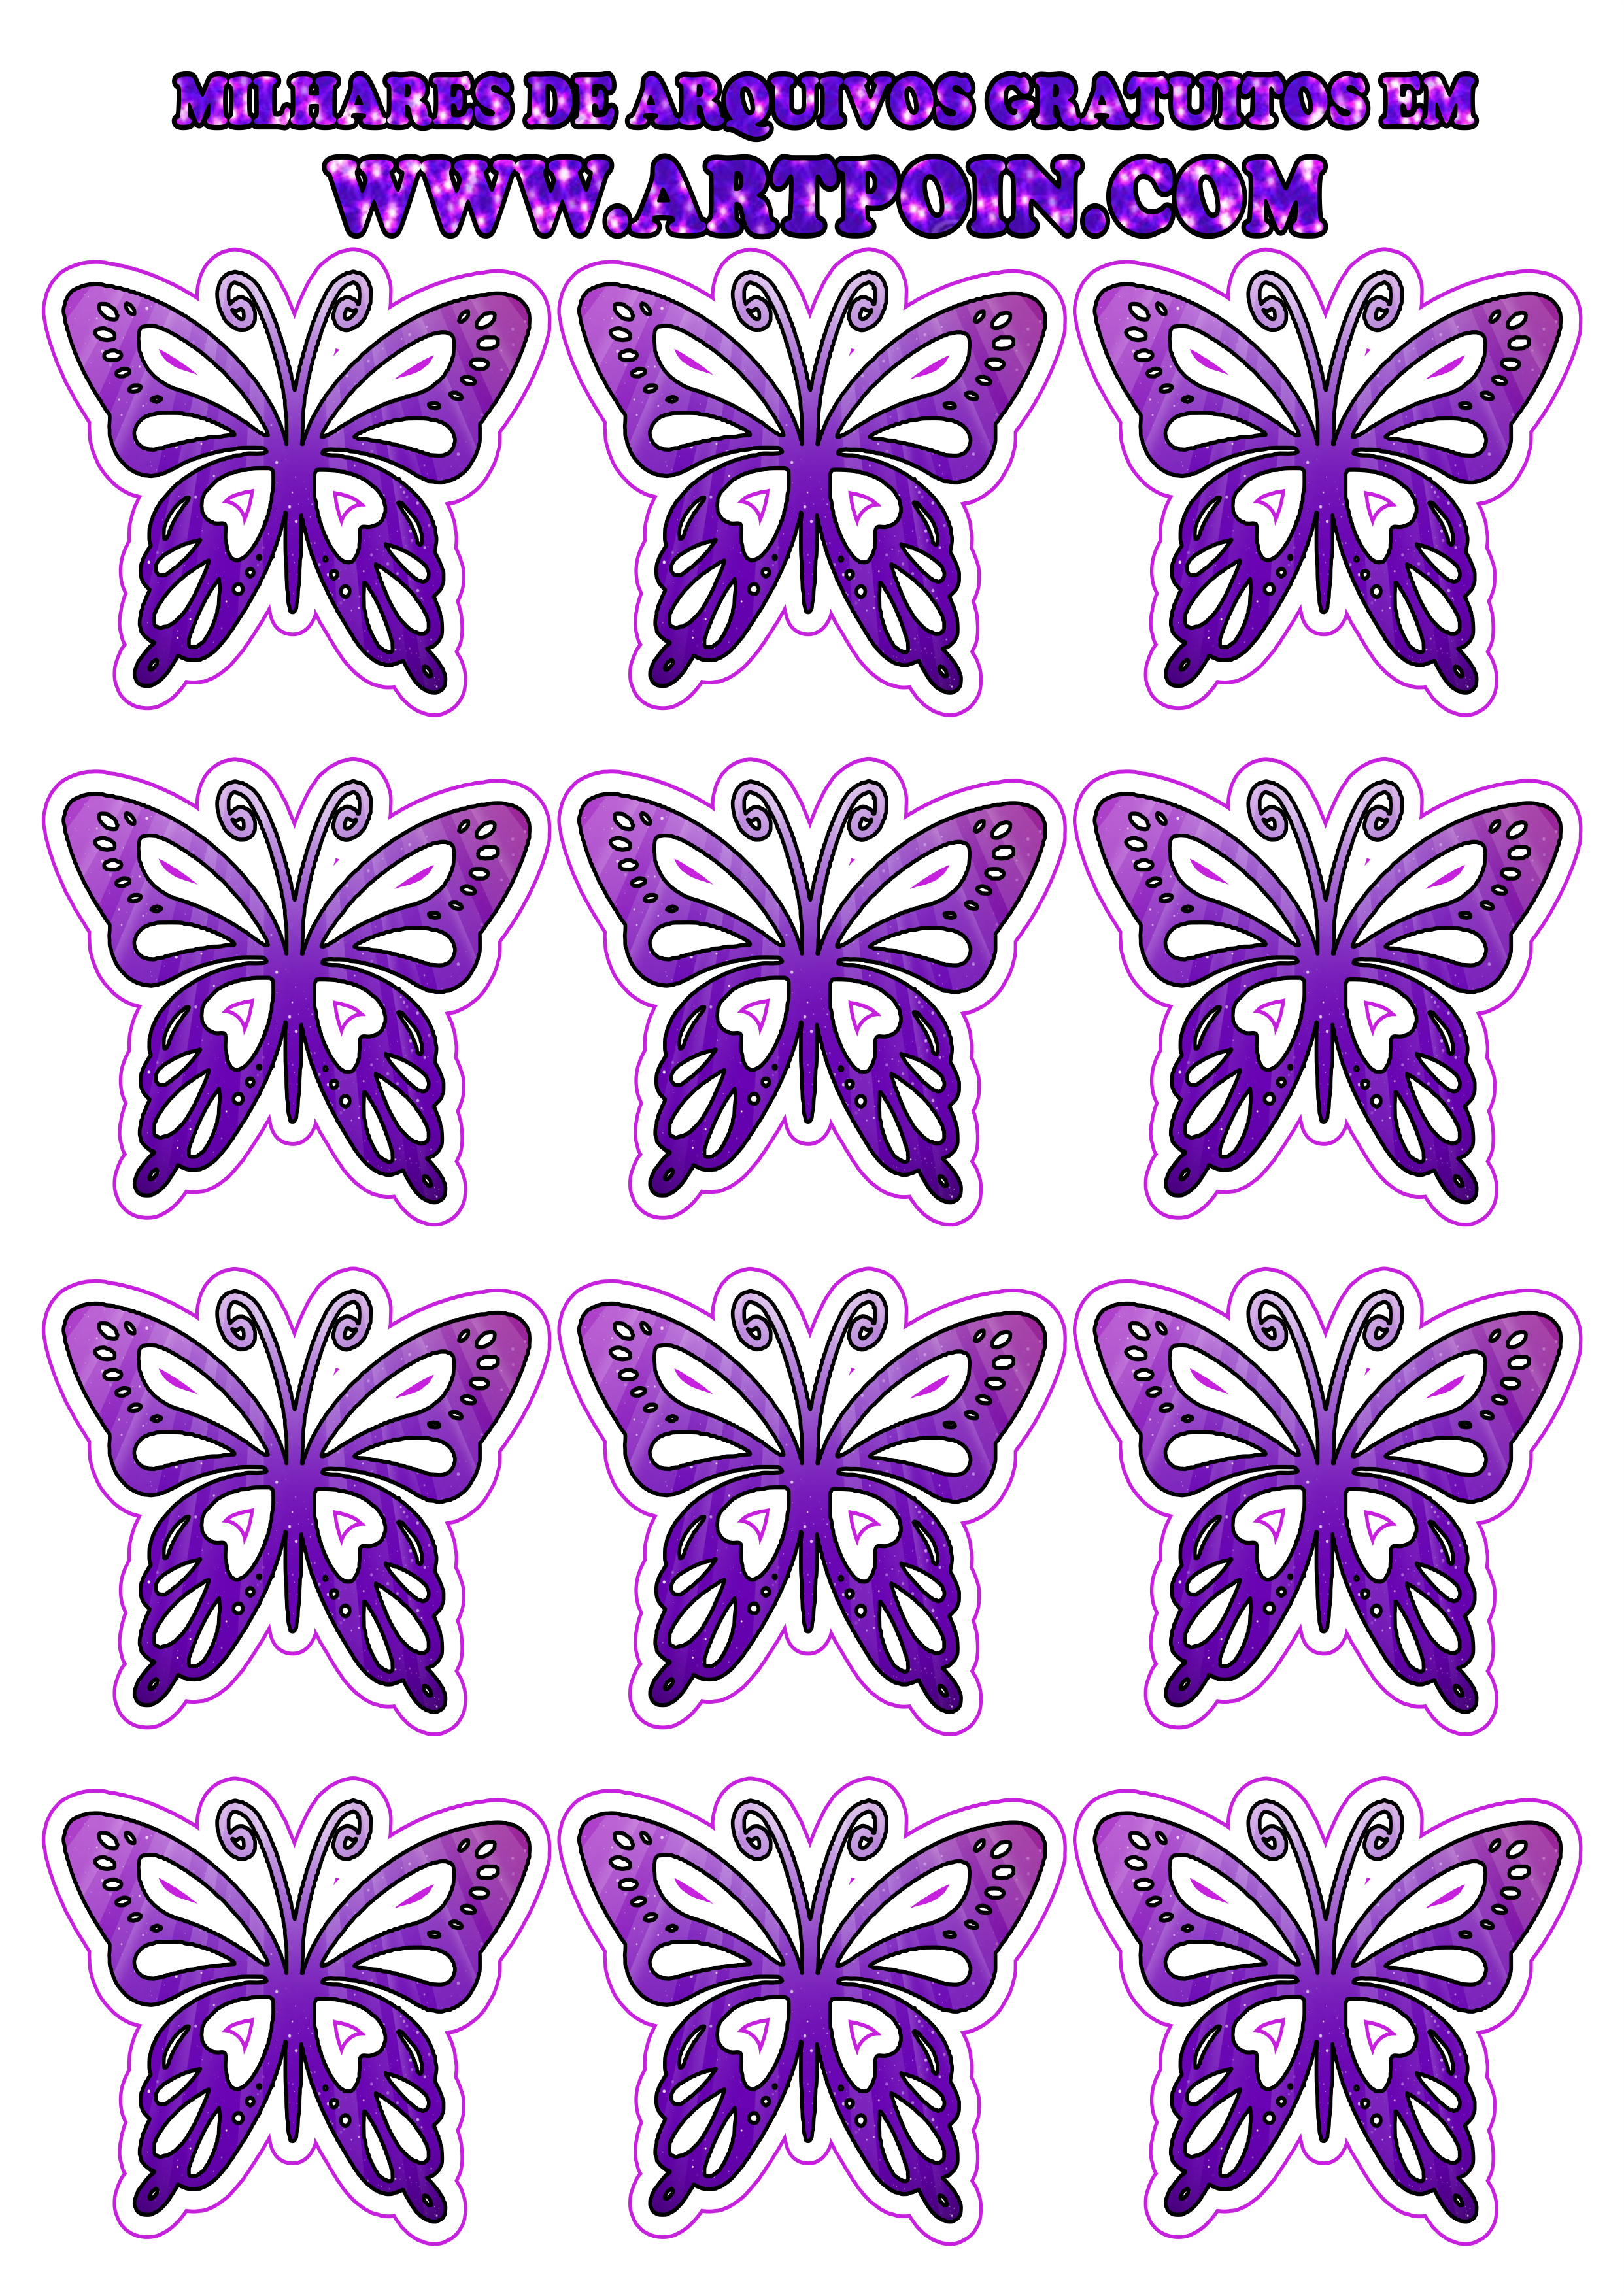 borboleta-dourada-com-lilas111